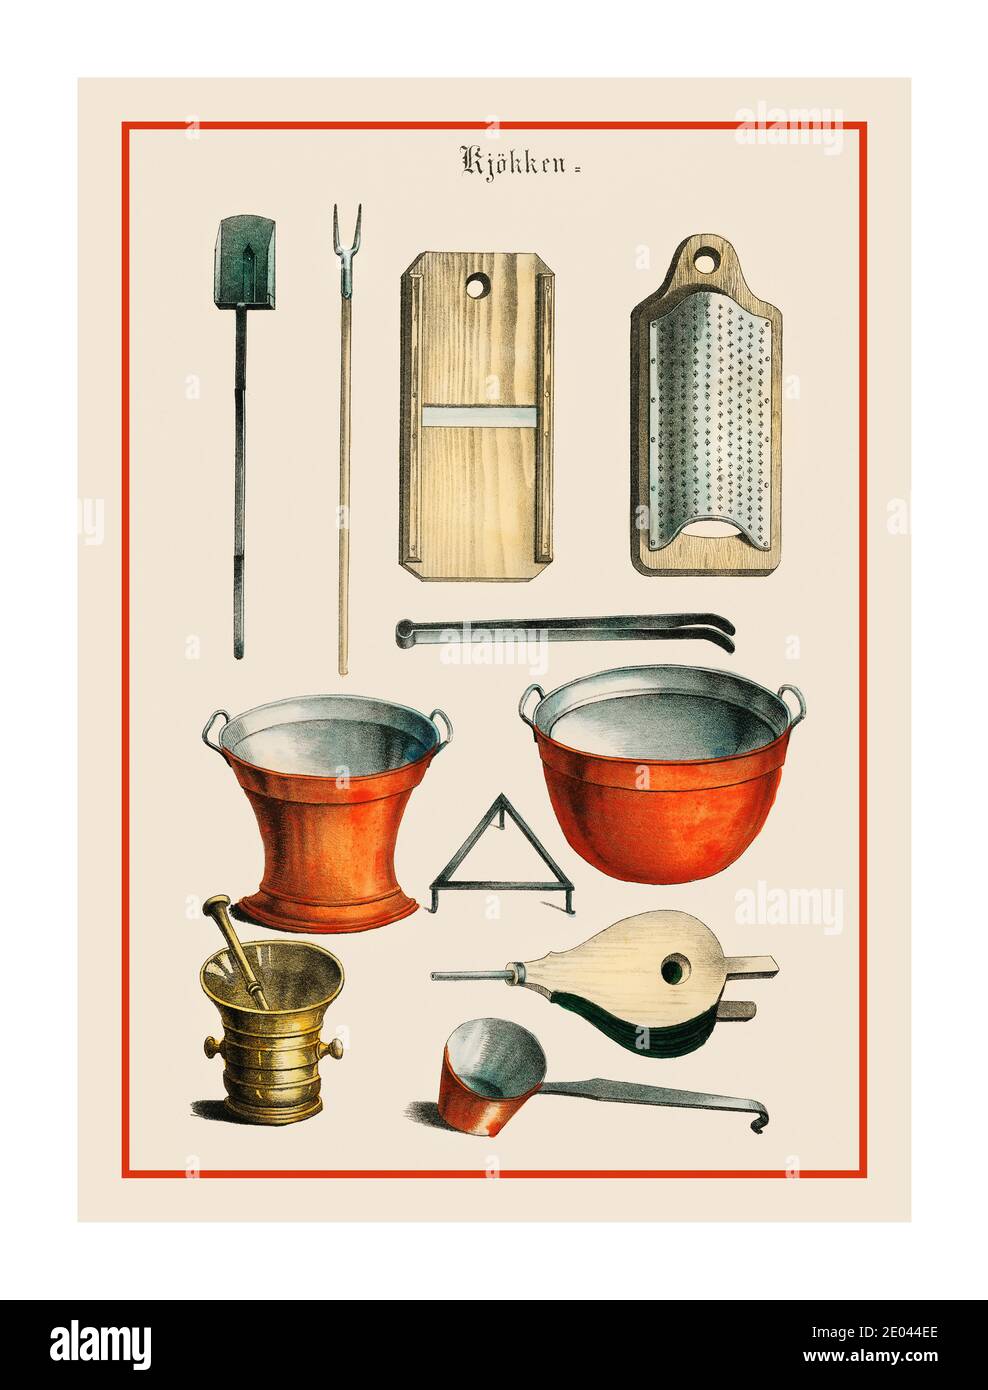 Litografía de los utensilios de cocina de 1800 (1850) Dinamarca, una colección vintage de utensilios de cocina y utensilios de cocina. Foto de stock